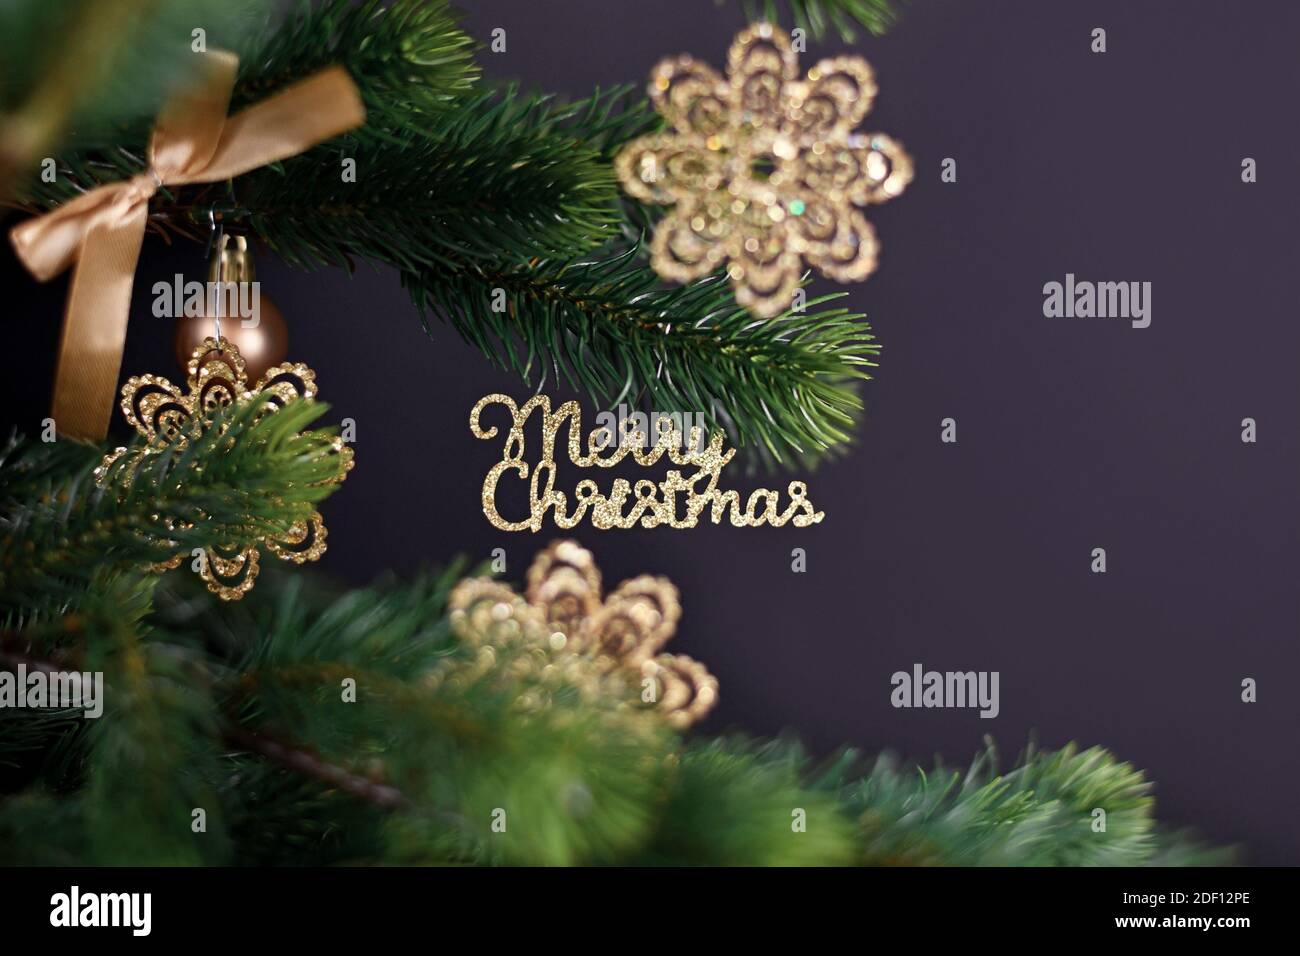 Goldener Weihnachtsbaum Ornament mit Text 'Merry Christmas' hängend aus Tannenzweig mit schneeflockenförmigen Kugeln auf dunklem Rücken Hintergrund Stockfoto